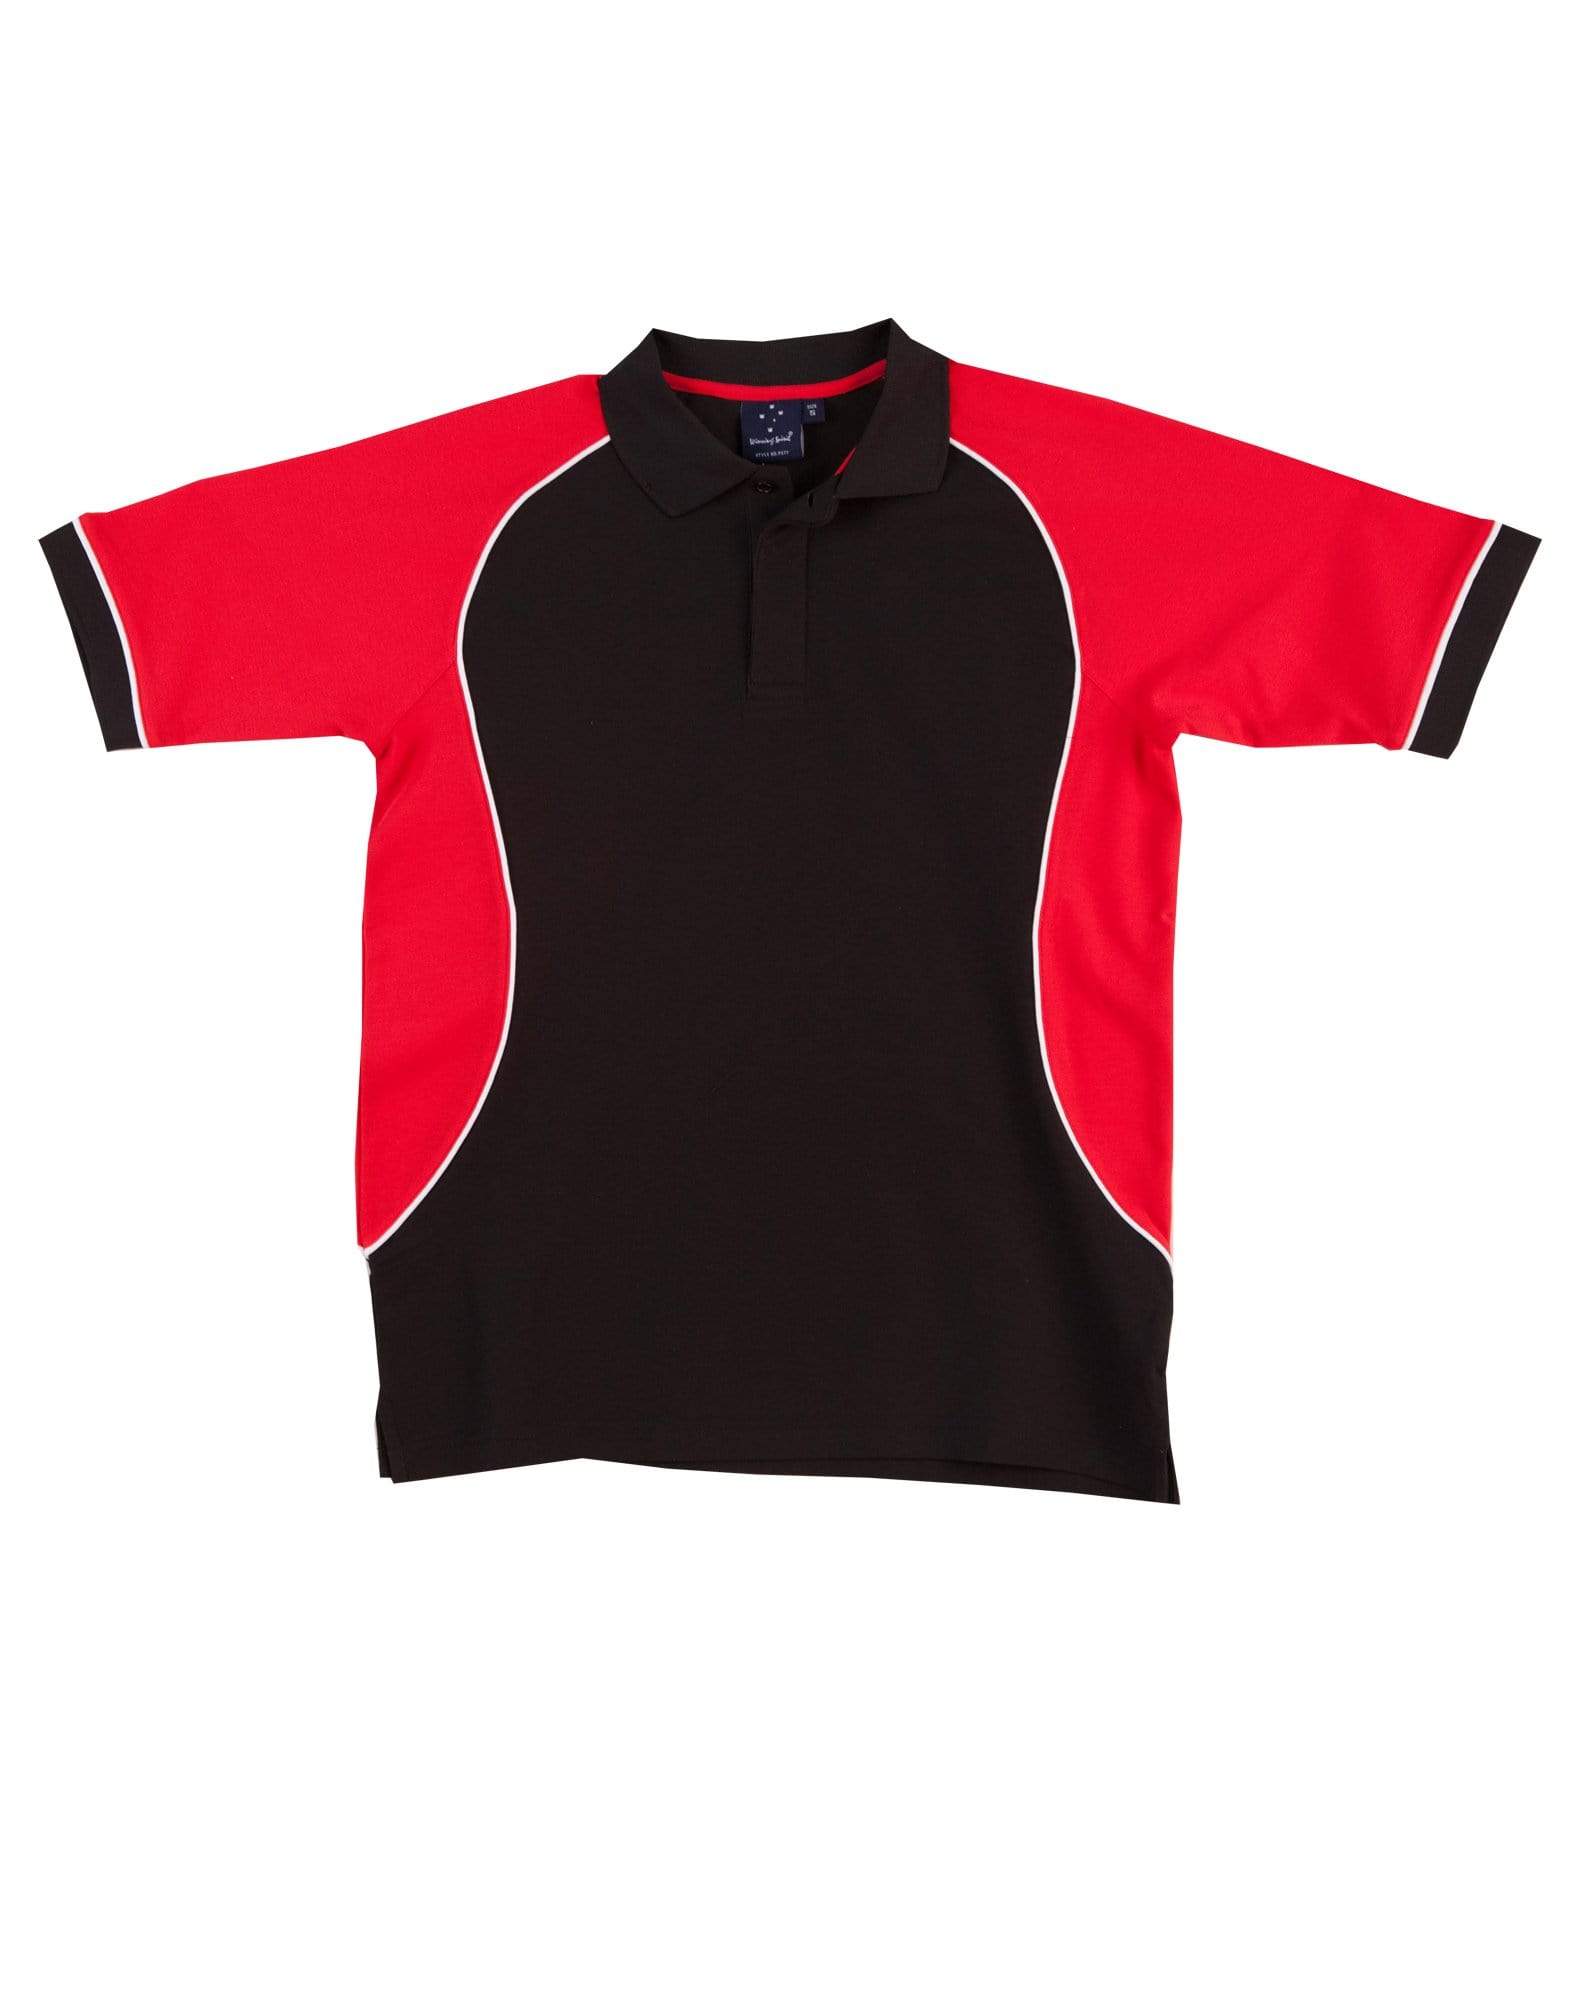 Winning Spirit Arena Polo Kids Ps77k Casual Wear Winning Spirit Black/ White/Red 4K 